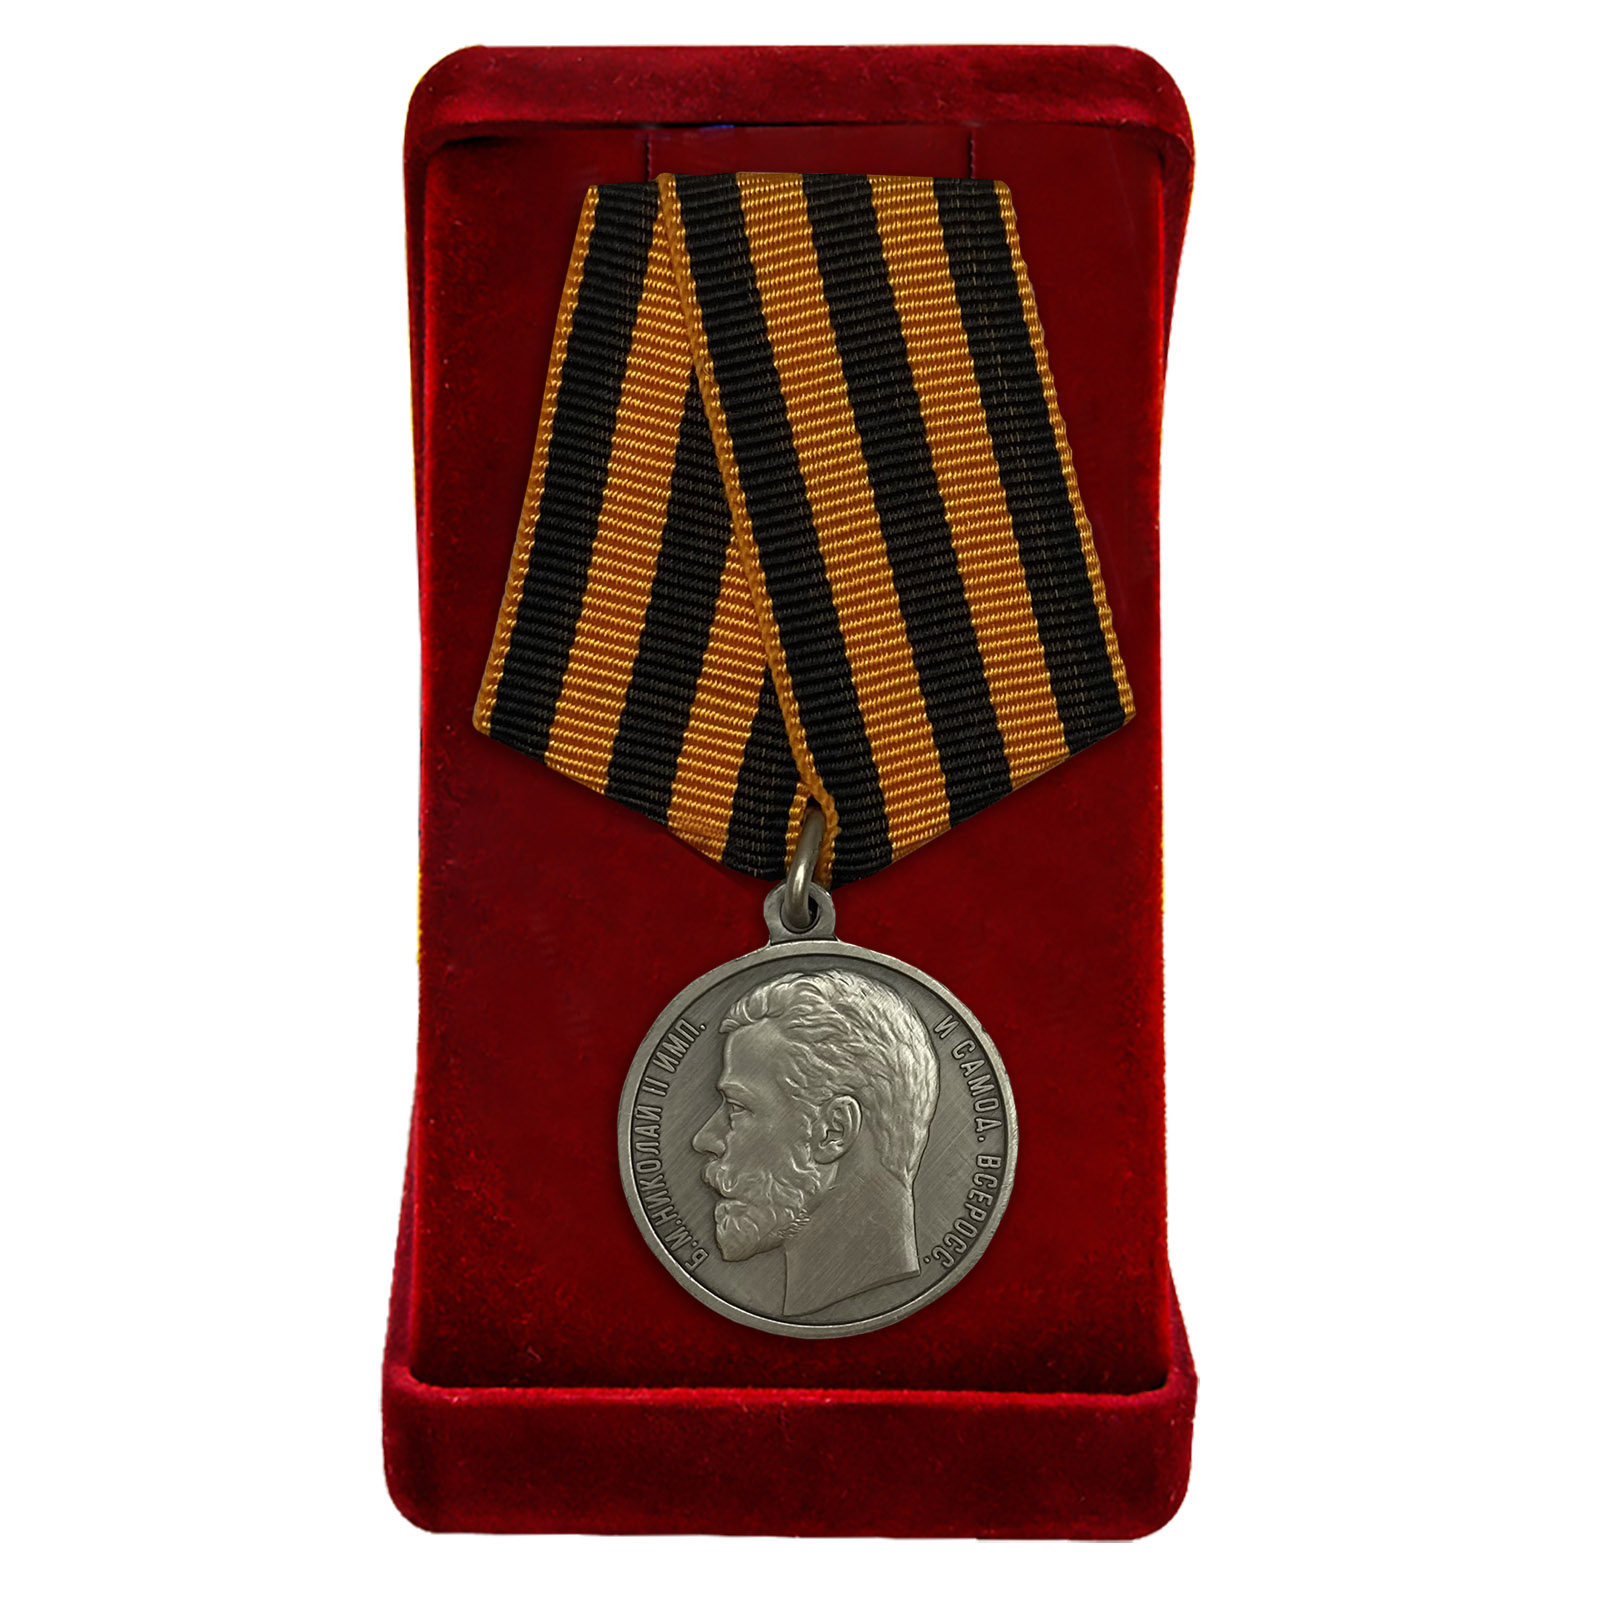 Купить медаль За храбрость 3 степени (Николай 2) в подарок онлайн